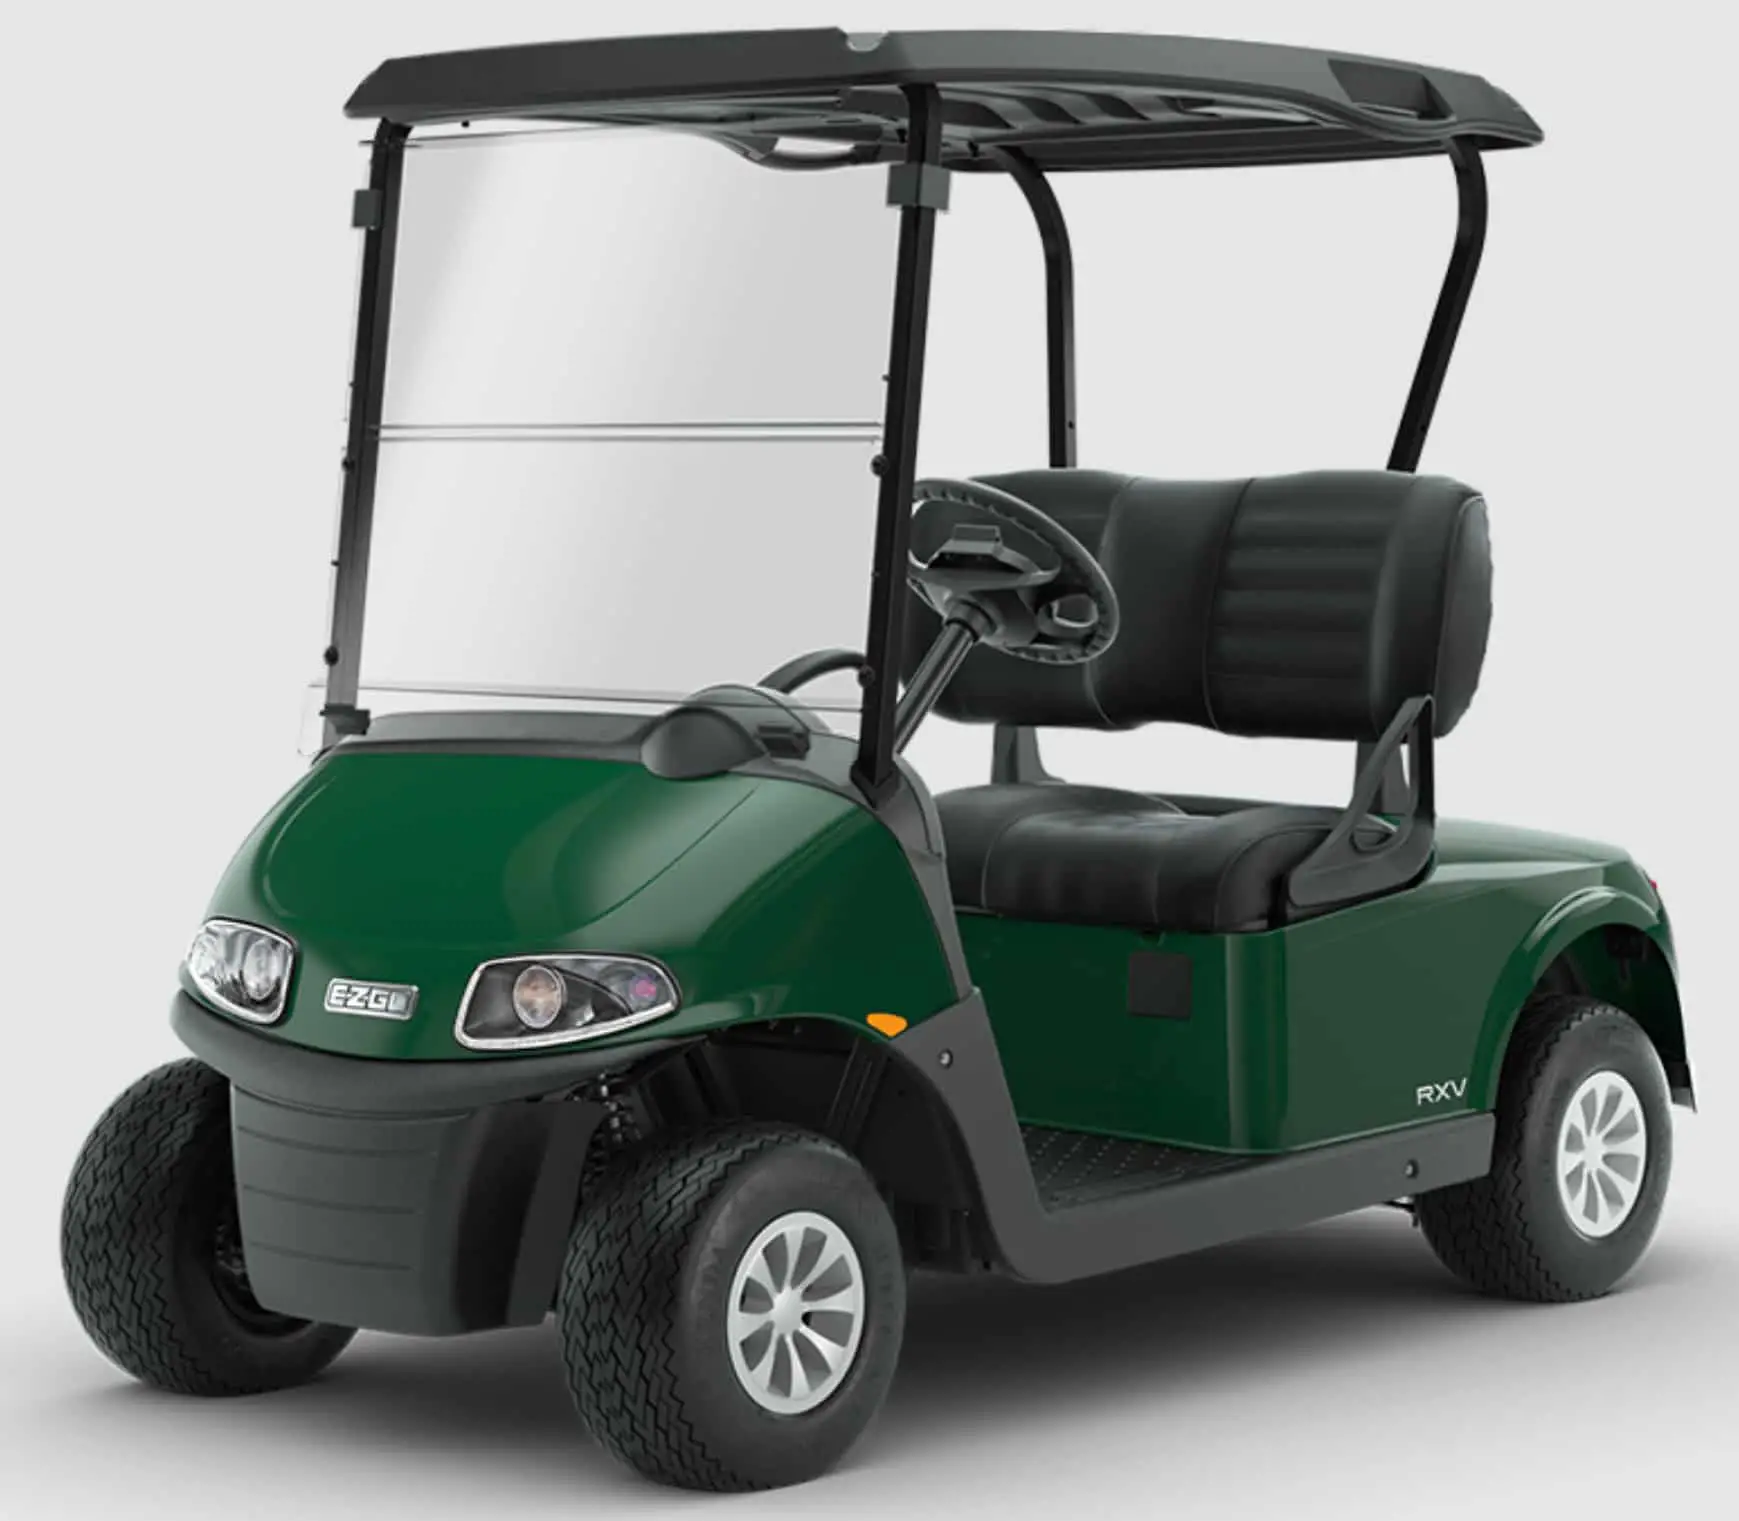 2. 2022 EZGO RXV 48v Electric Golf Cart